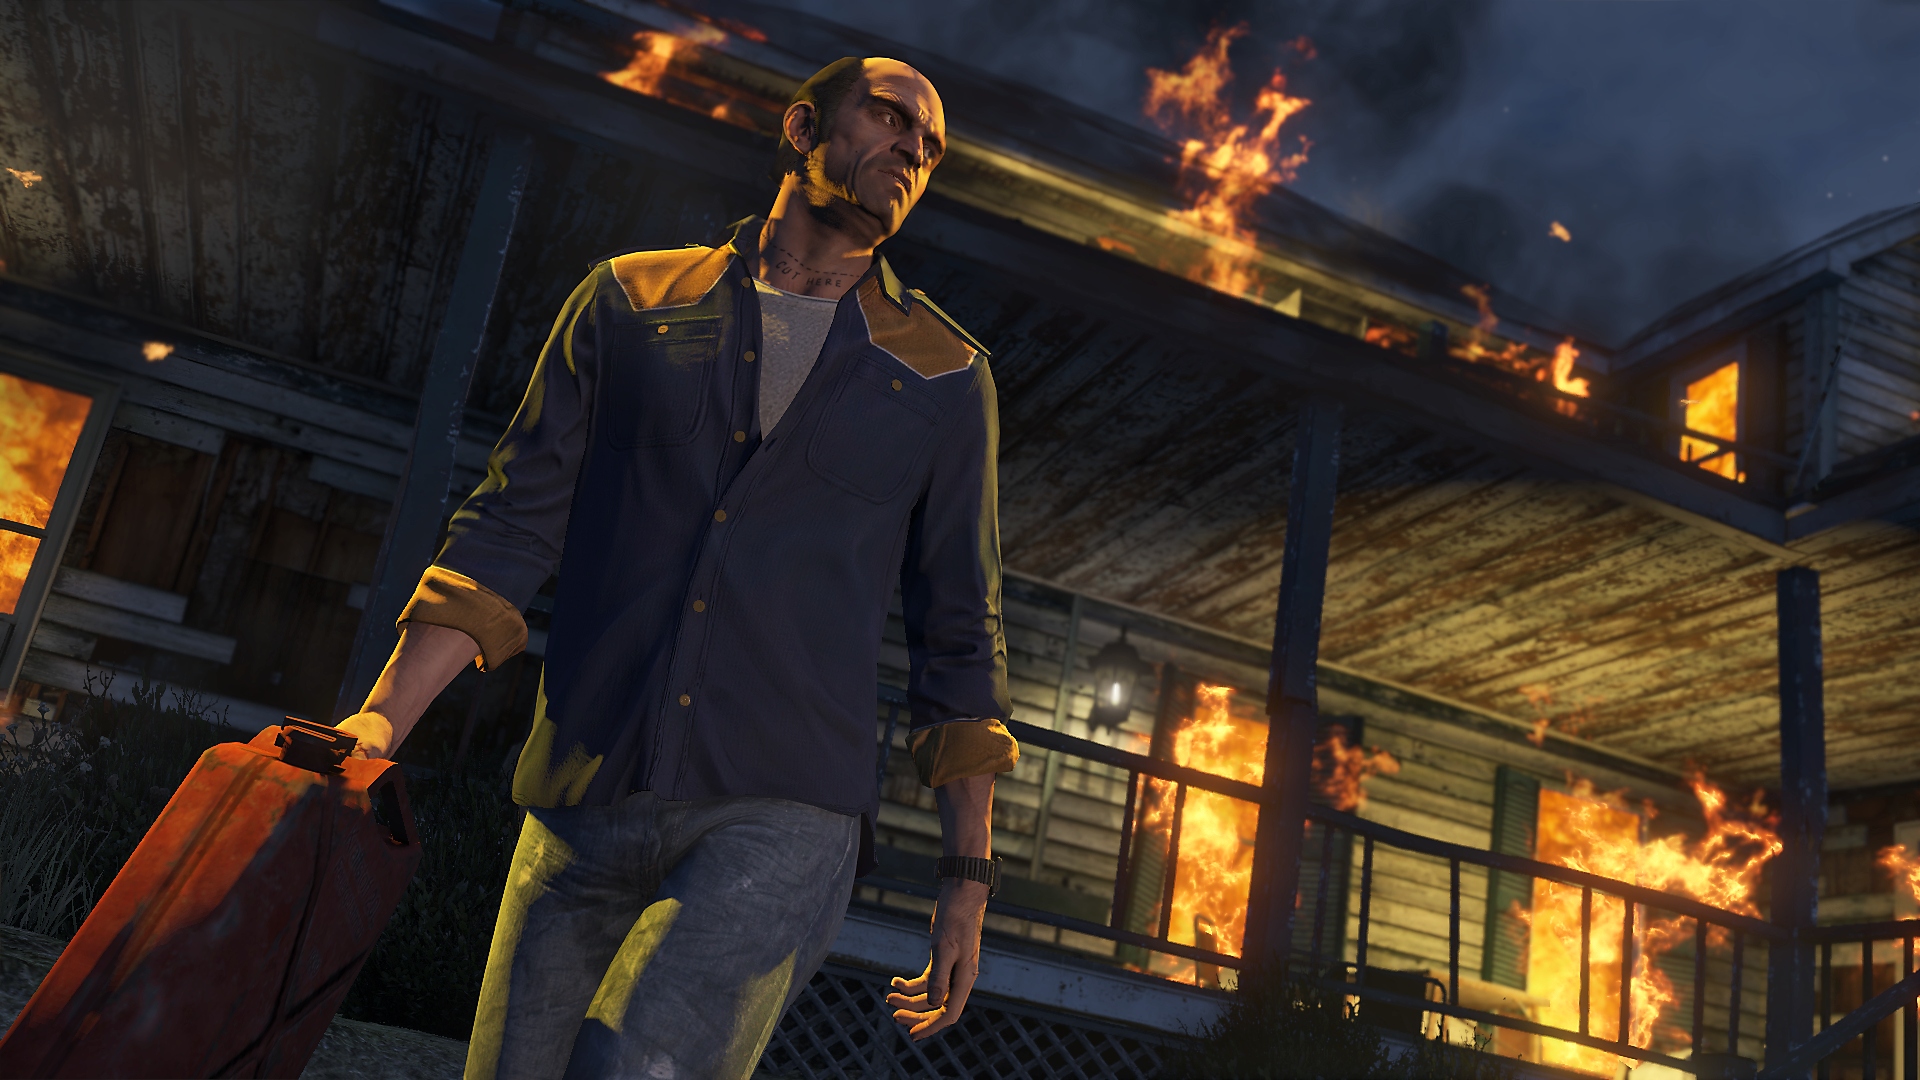 Grand Theft Auto V 스크린샷, 휘발유통을 든 채 불타는 건물을 걸어나오는 메인 캐릭터 트레버